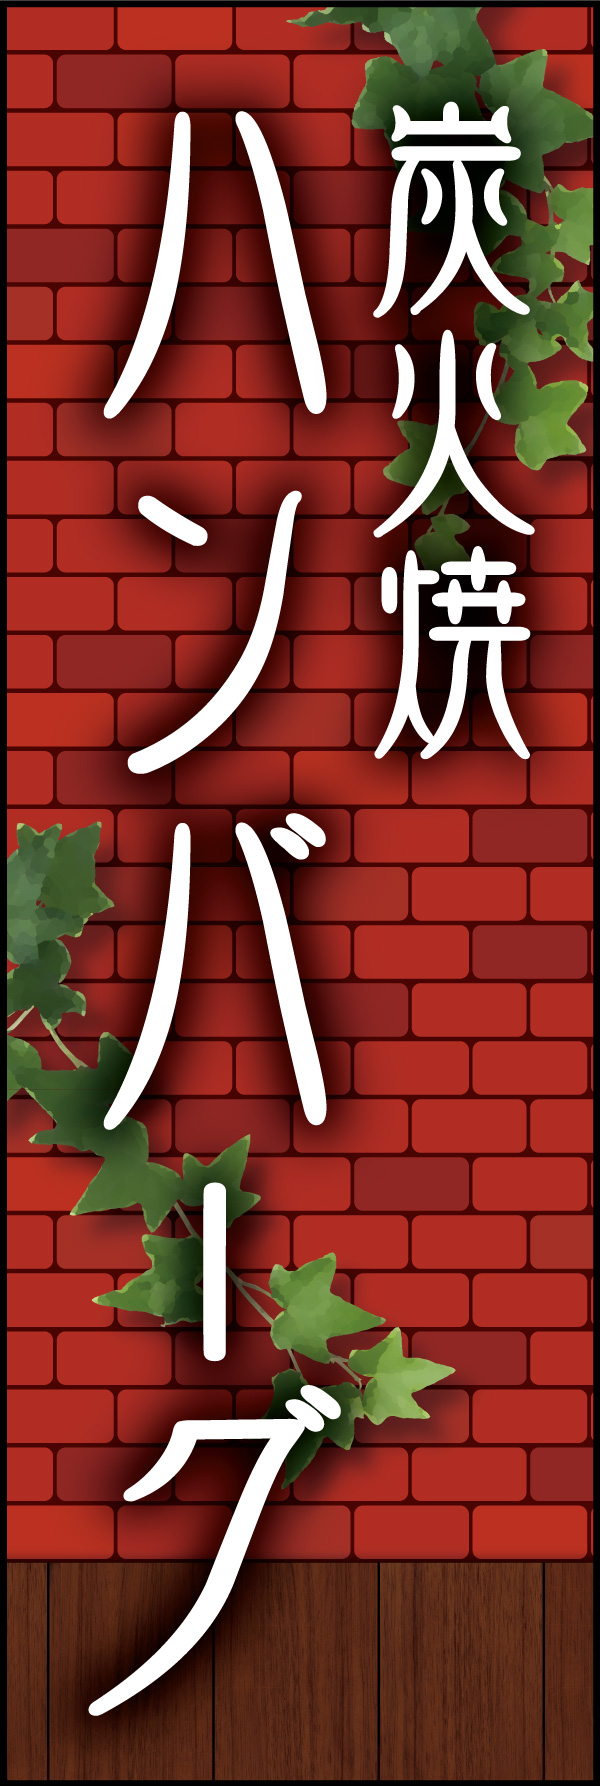 炭火焼きハンバーグ 04 「炭火焼ハンバーグ」ののぼりです。赤煉瓦をバックに、懐かしい洋食屋さんをイメージしてデザインしました。(Y.M)